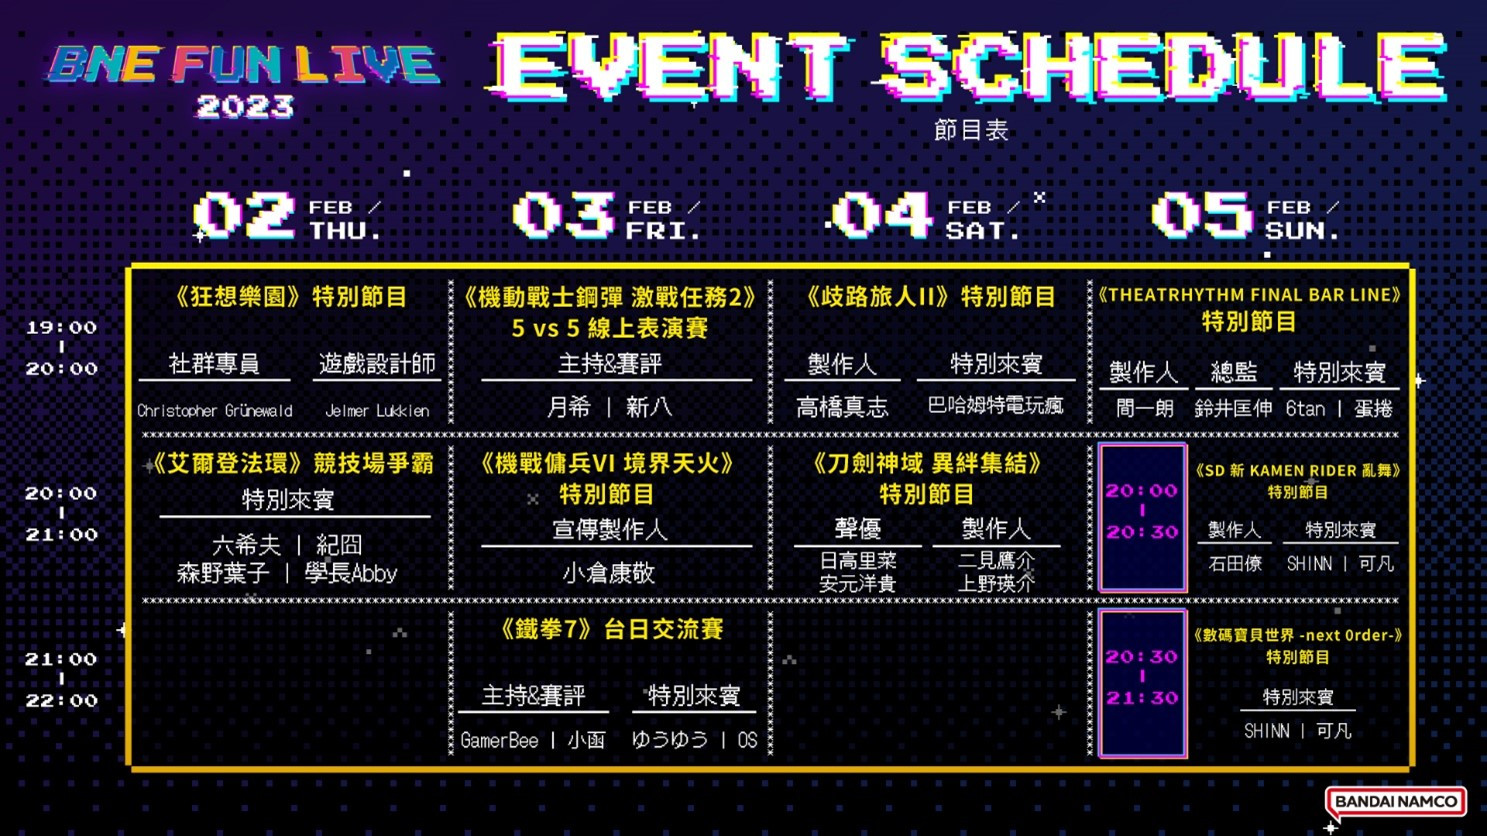 台北电玩展特别活动「BNE FUN LIVE 2023｣活动网站上线！活动时程与来宾阵容